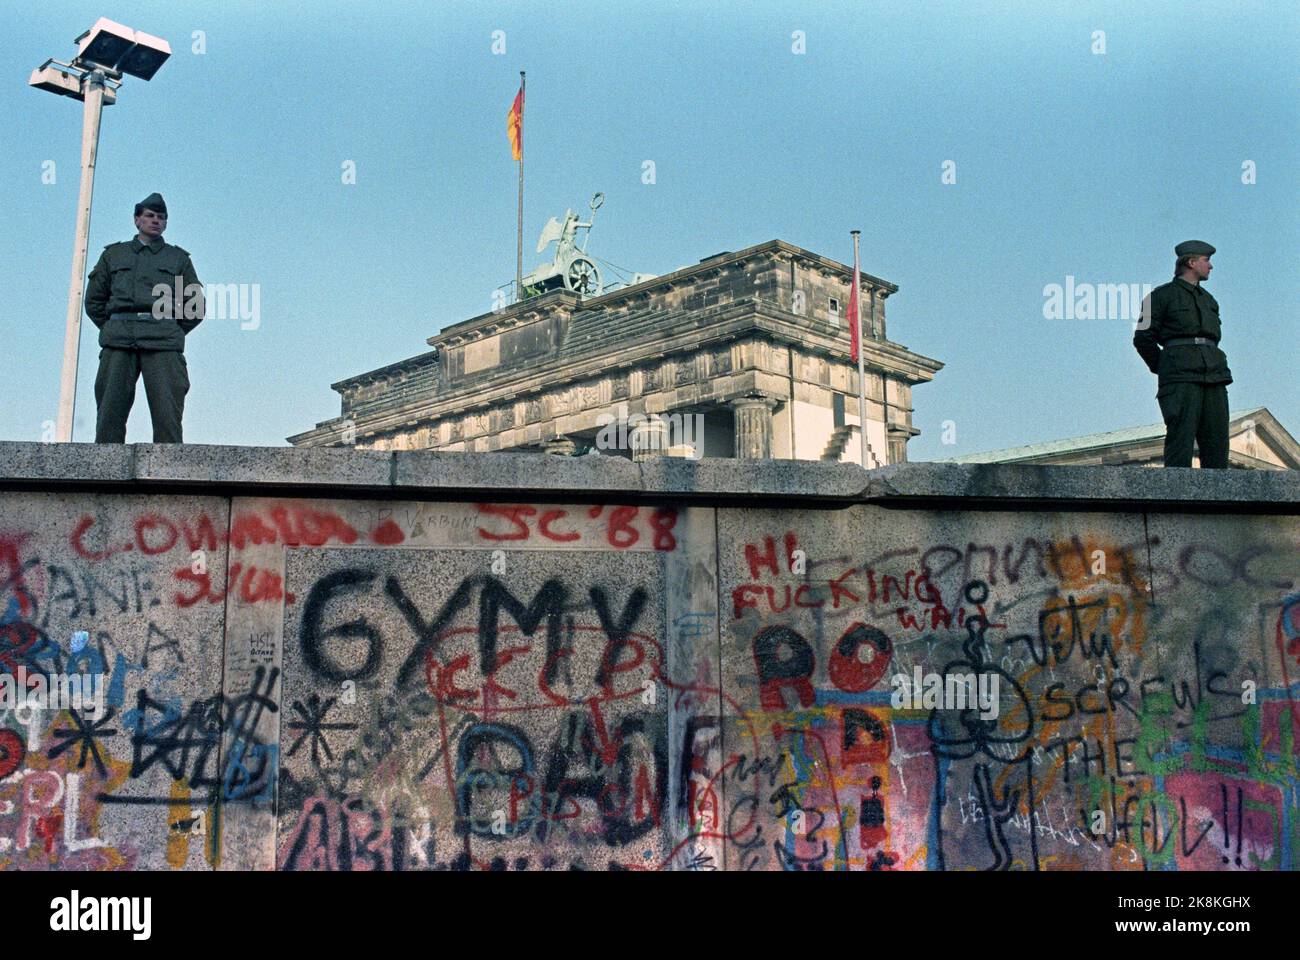 Berlin, Deutschland 19891112: Fall der Berliner Mauer: Die Mauer zwischen Ost- und Westdeutschland öffnet sich in Berlin. DDR-Soldaten an der Mauer am Brandenburger Tor. Graffiti / Kennzeichnung an der Wand. Foto: Jørn H. Moen, NTB Stockfoto